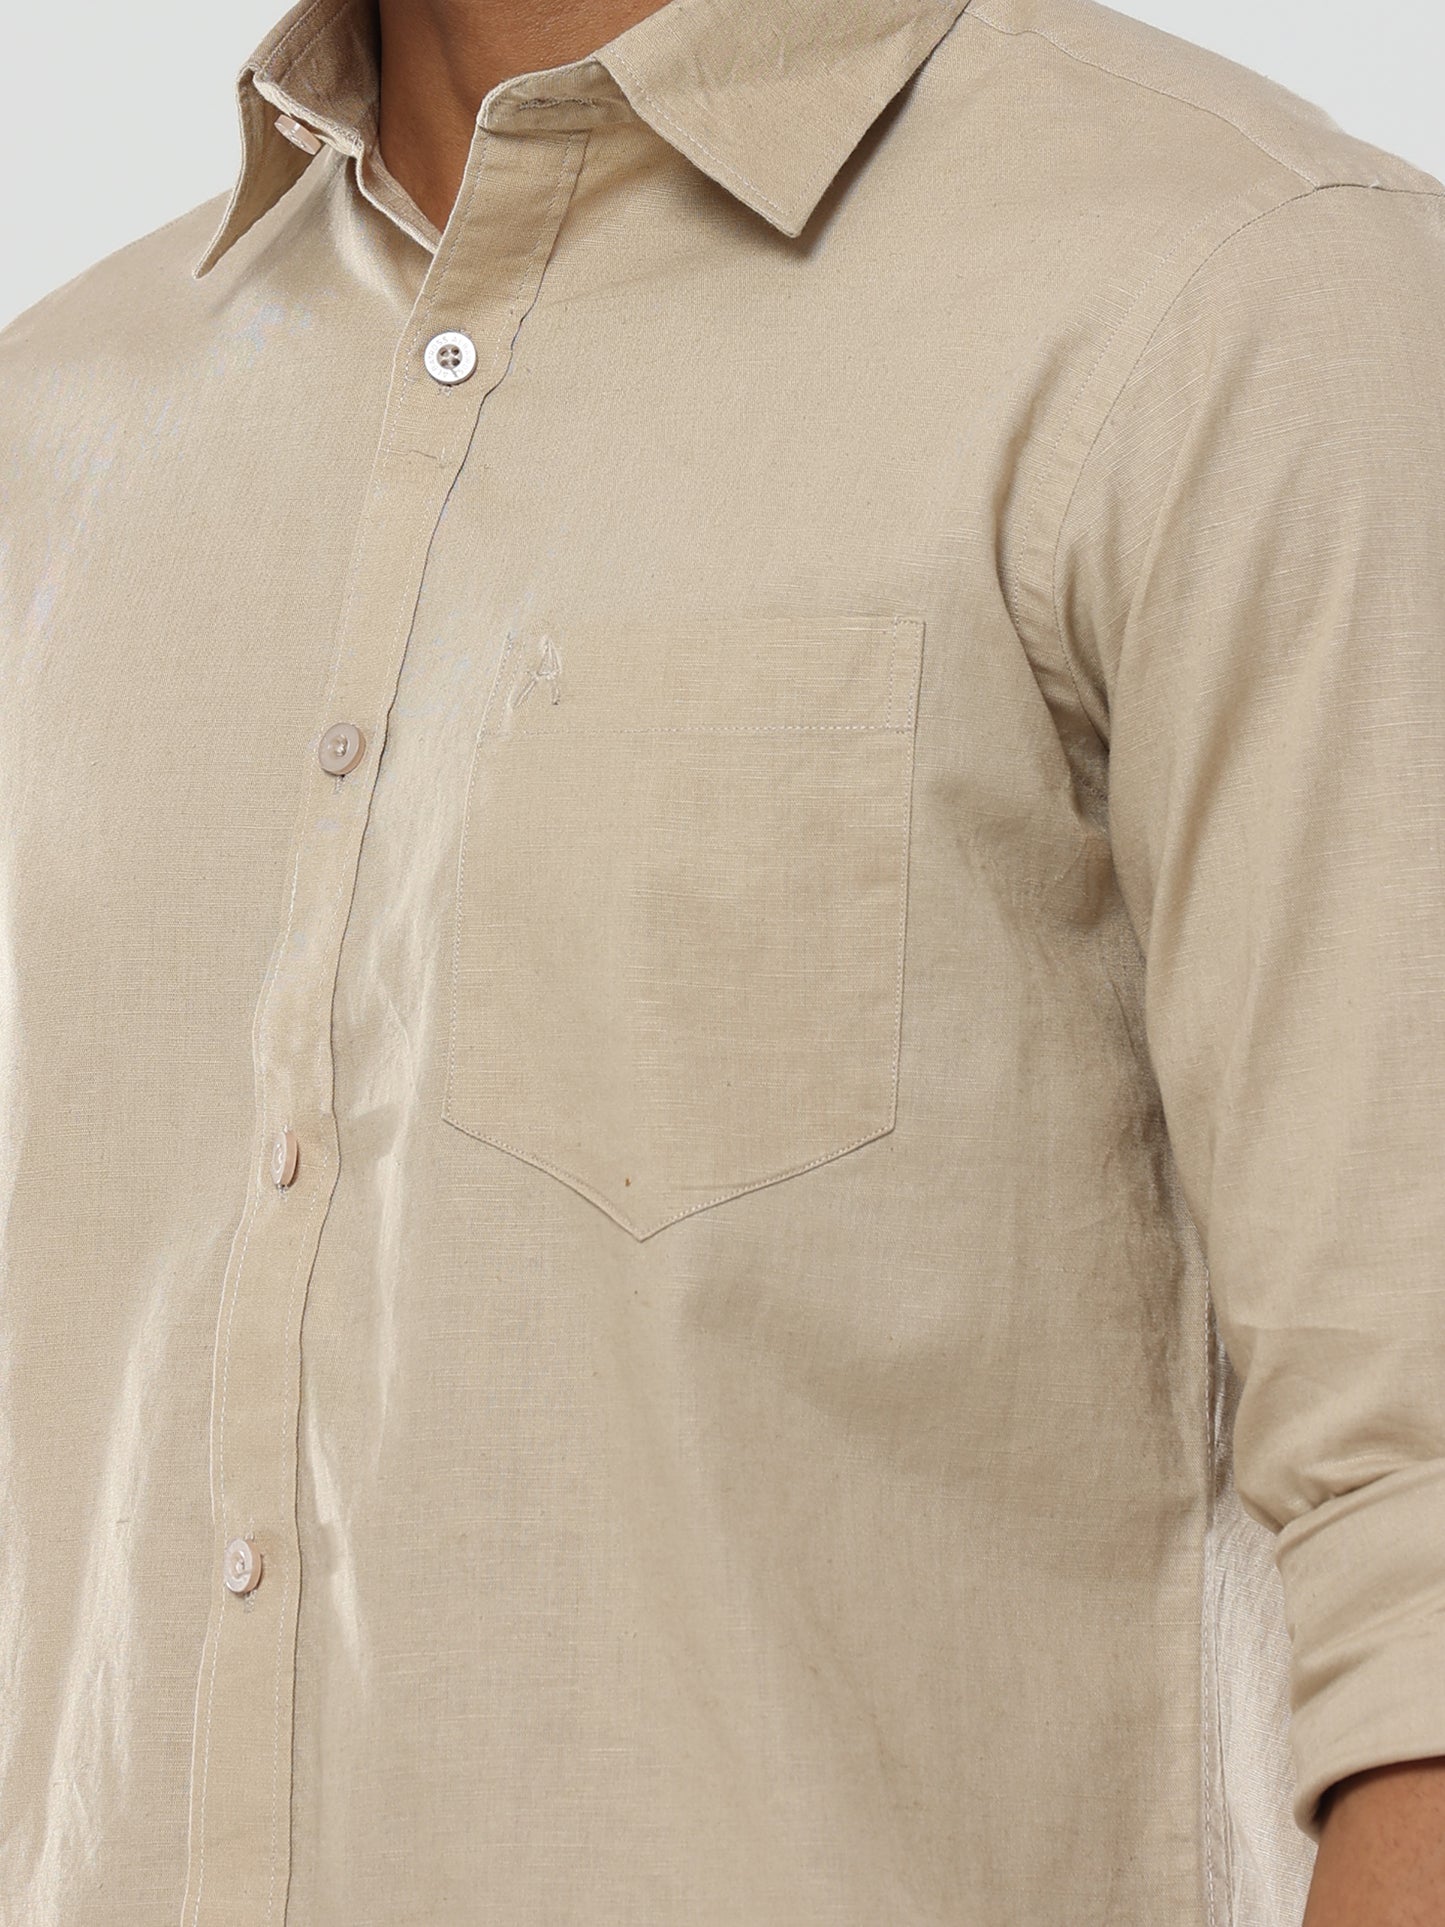 Biscuit Plain premium Cotton linen shirt with pocket for men